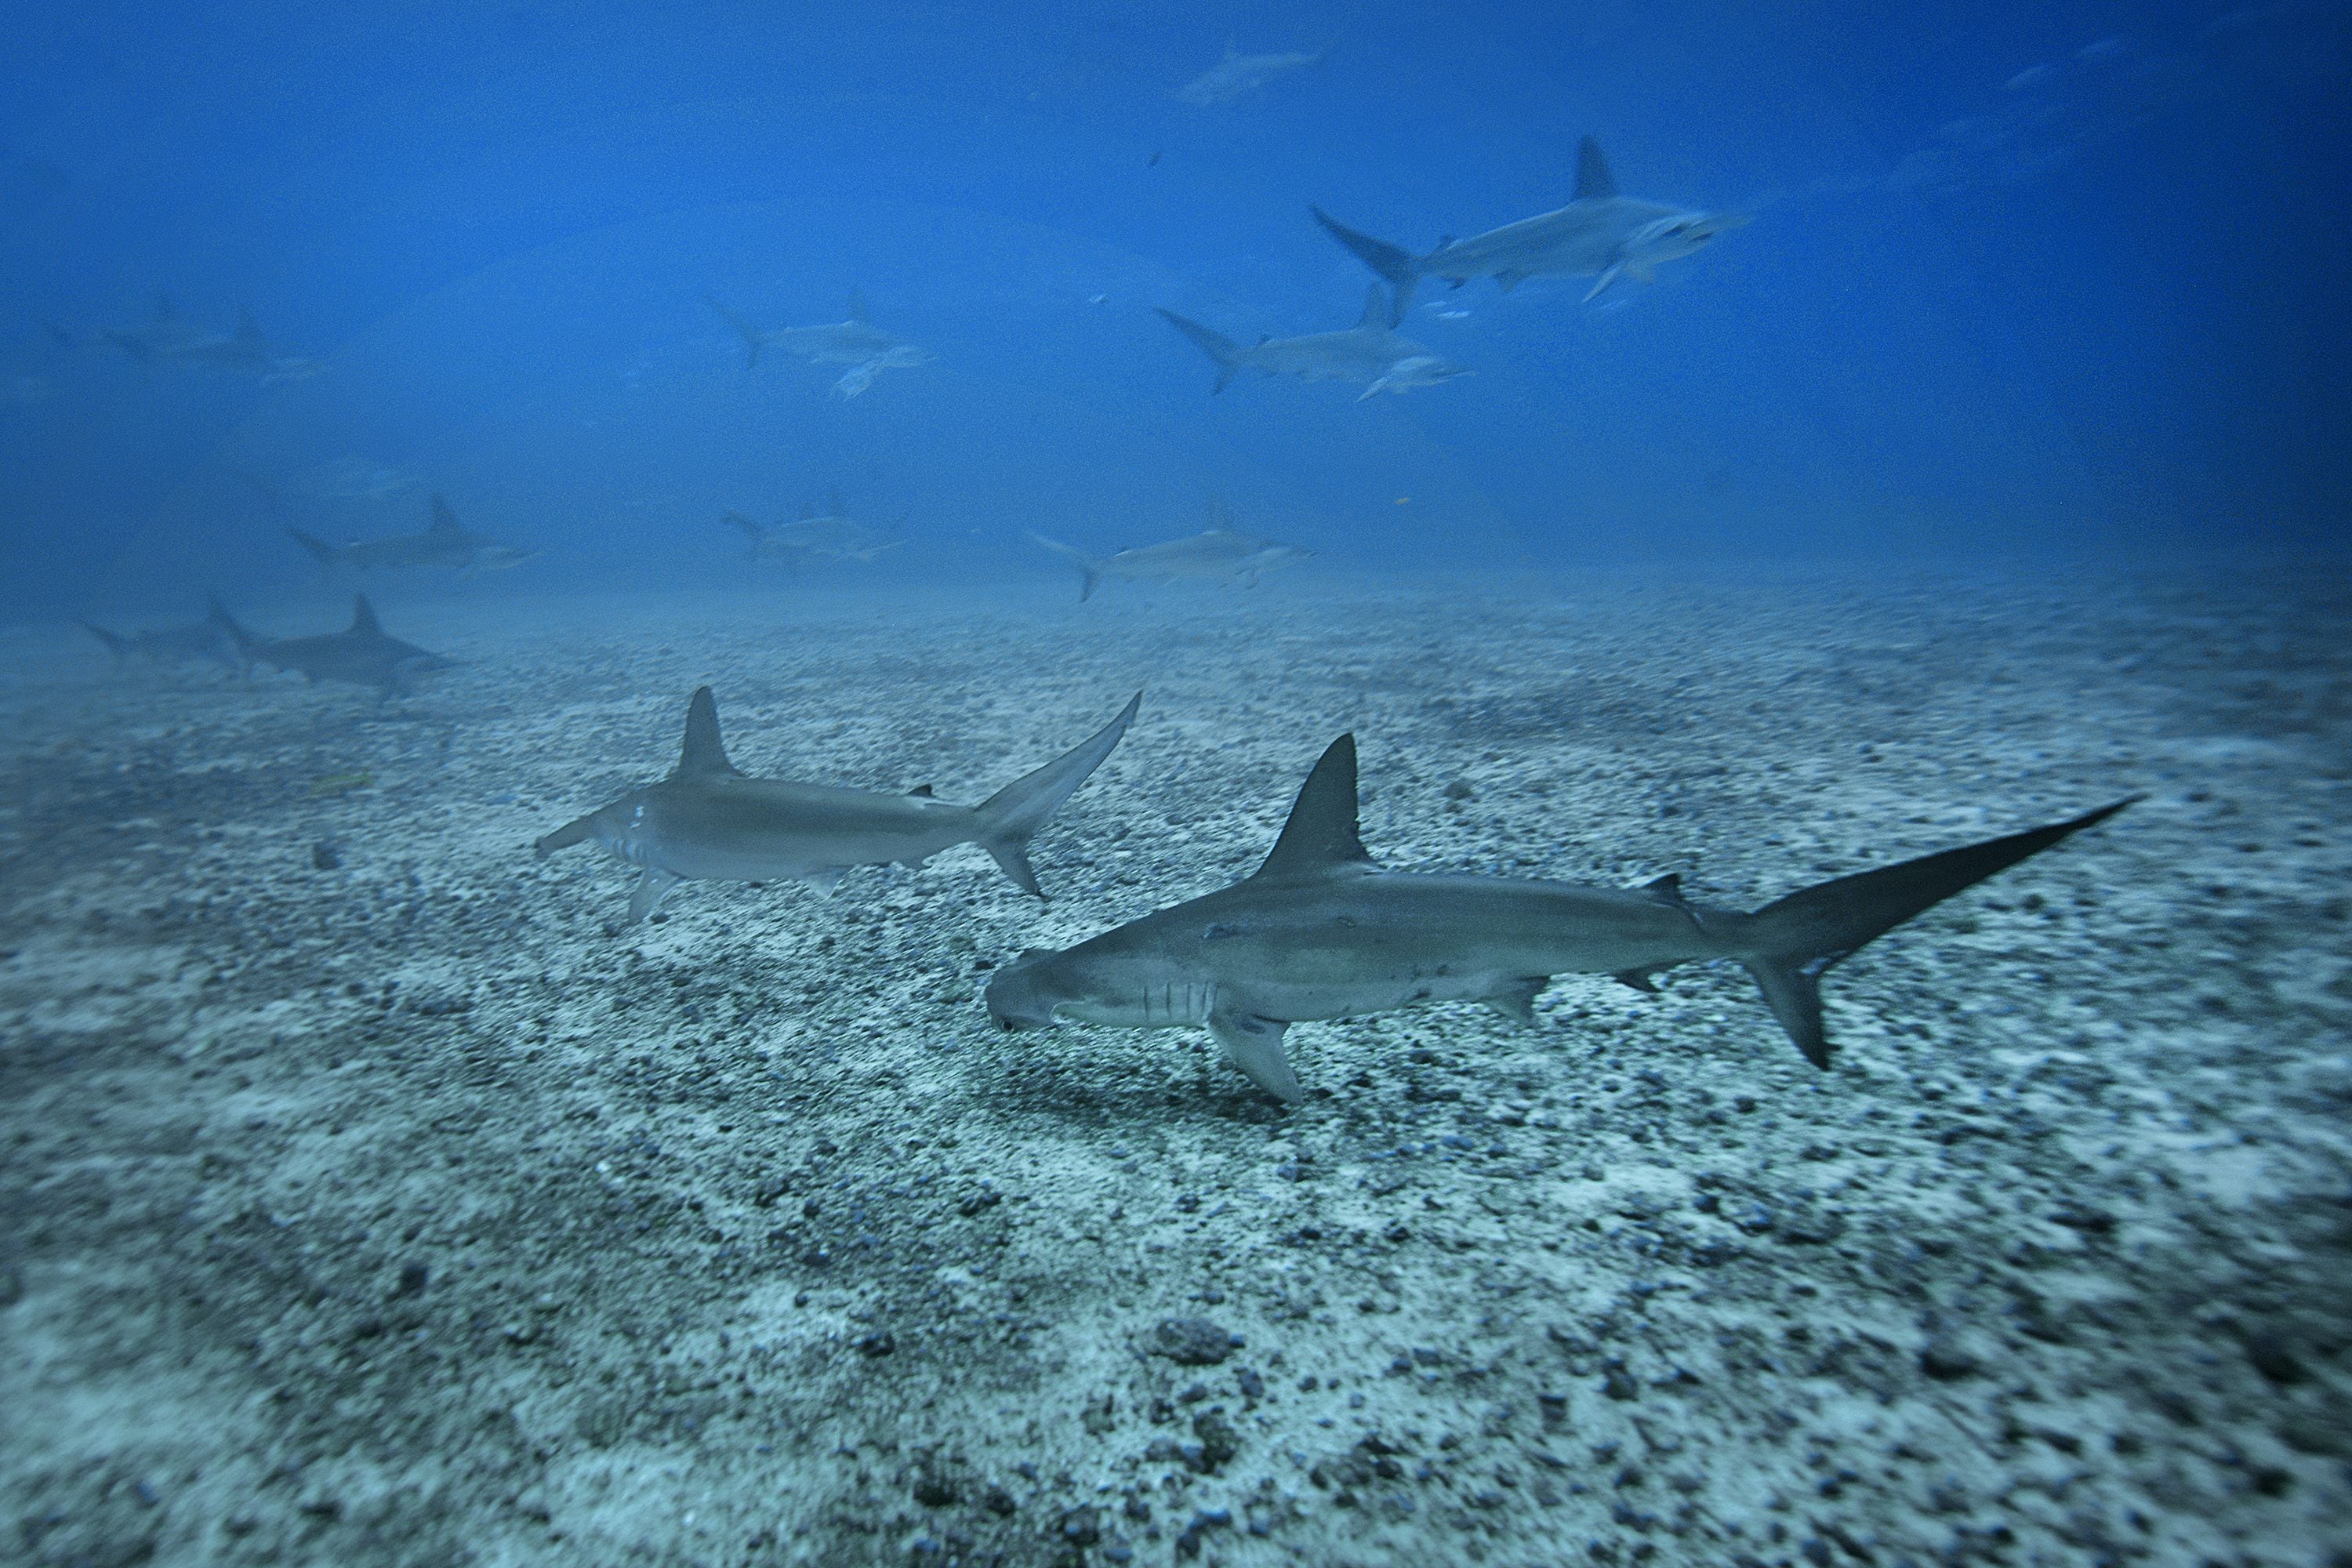 Calentamiento y acidificación de los océanos podrían reducir la supervivencia de embriones de tiburón para 2100, revela un estudio reciente.